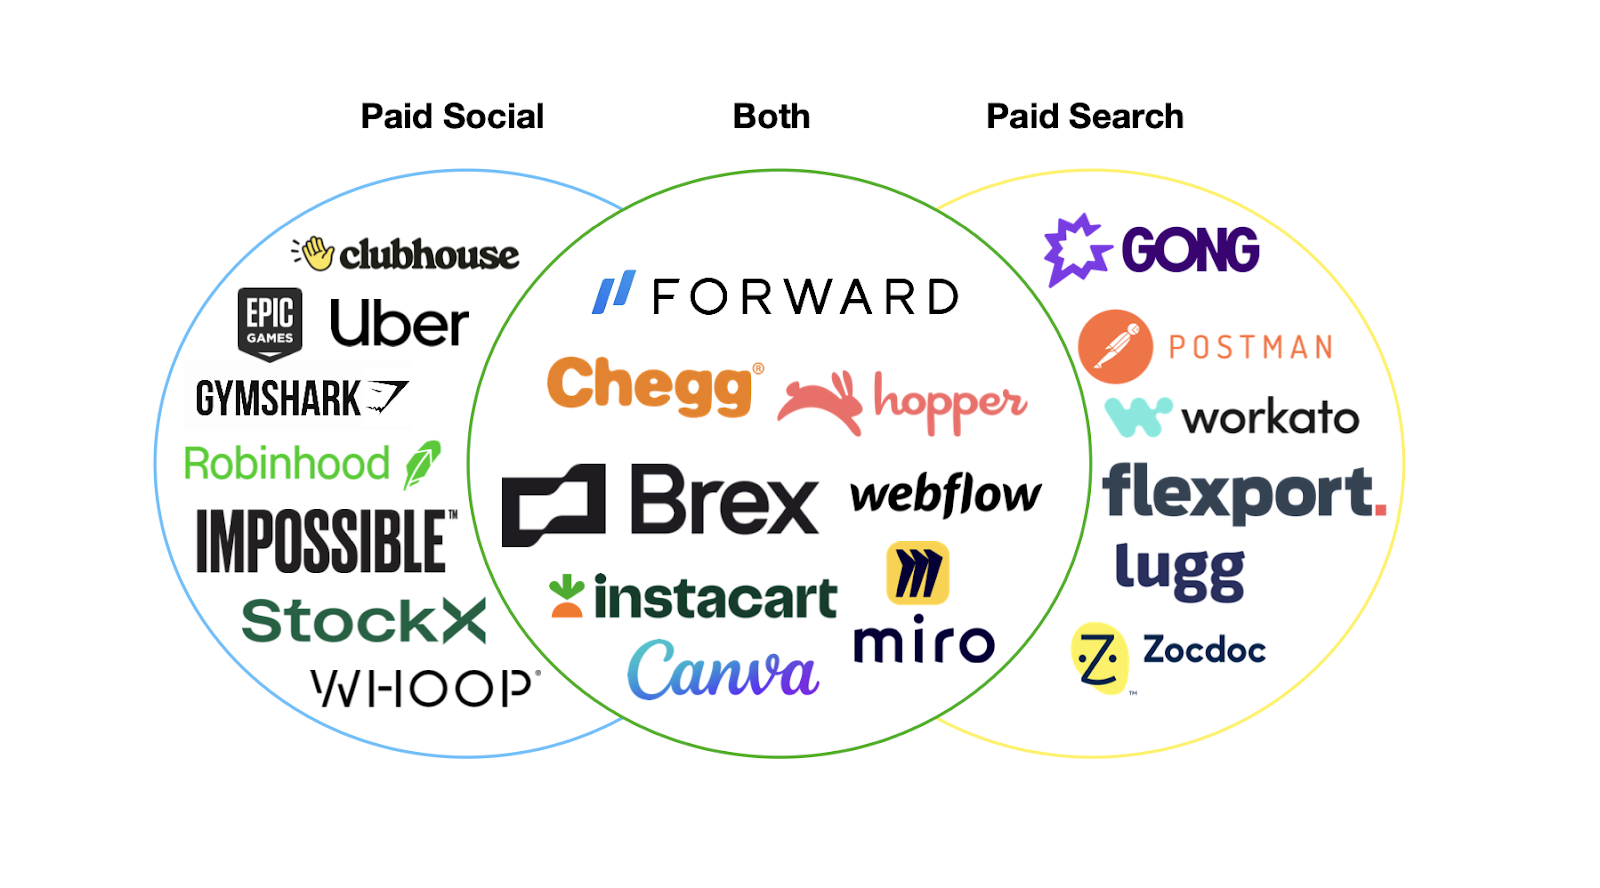 Exemples de canaux que les startups auraient pu sélectionner pour trouver PMF.